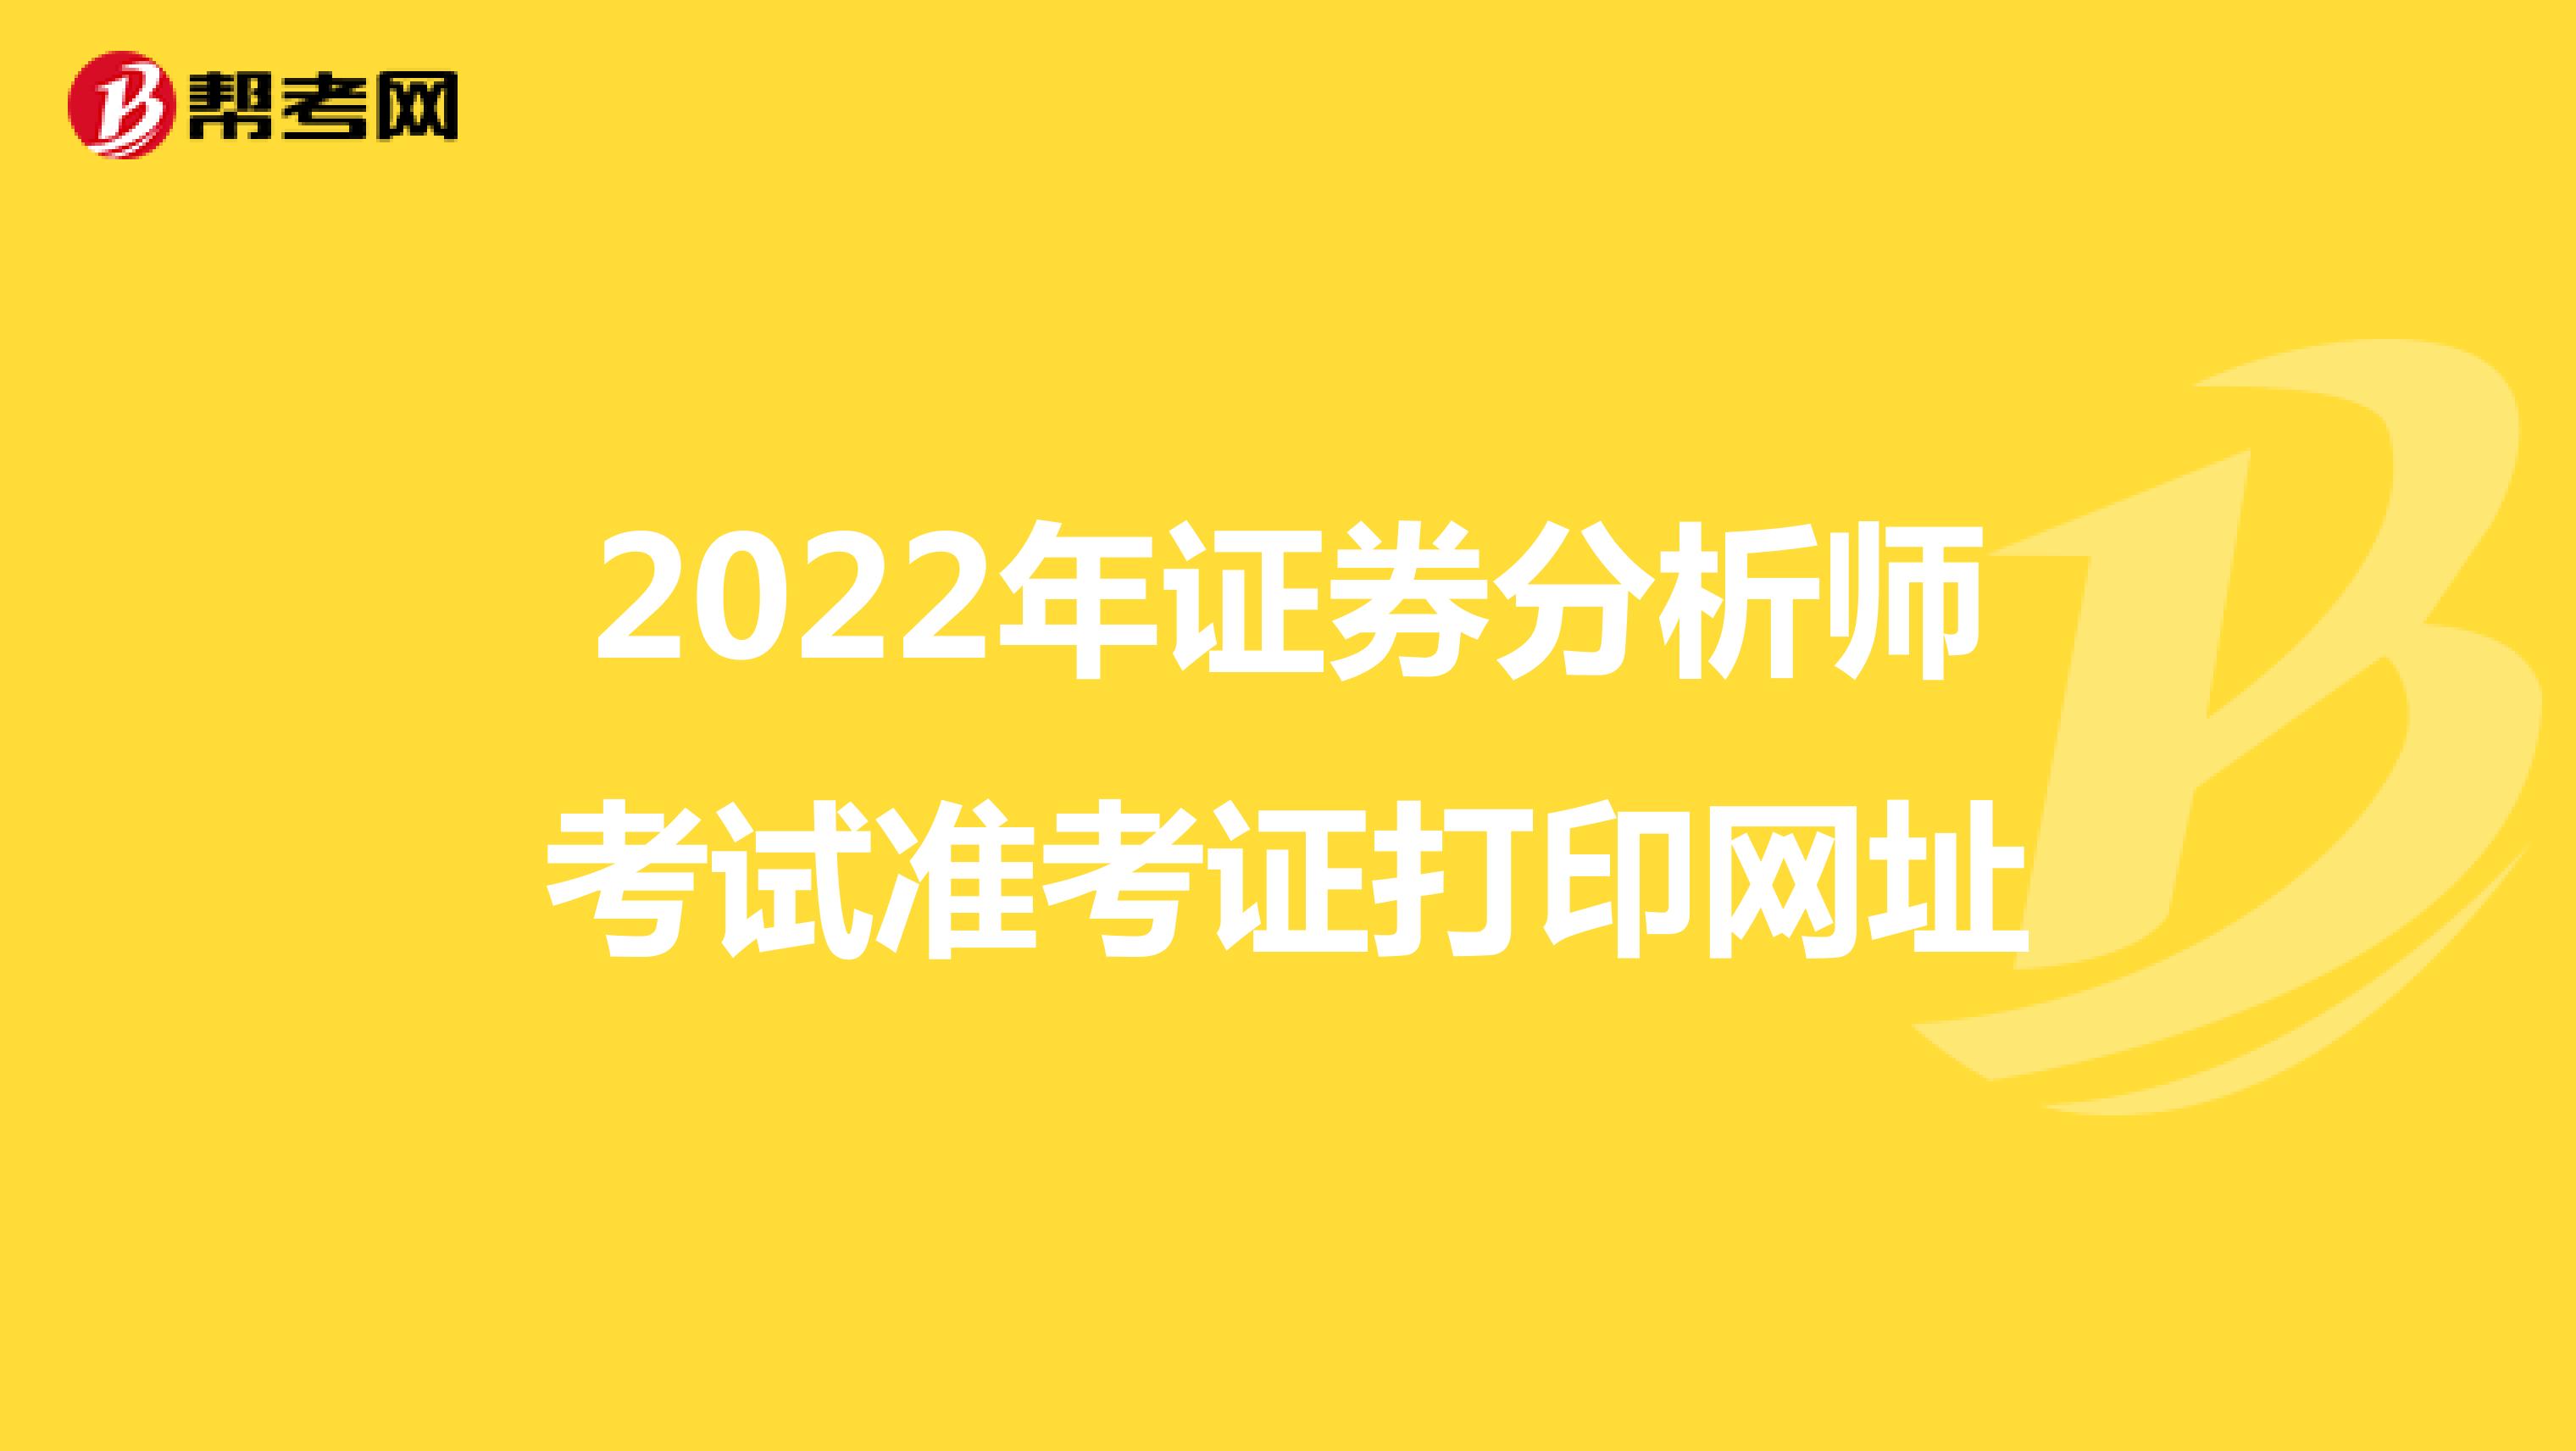 2022年证券分析师考试准考证打印网址